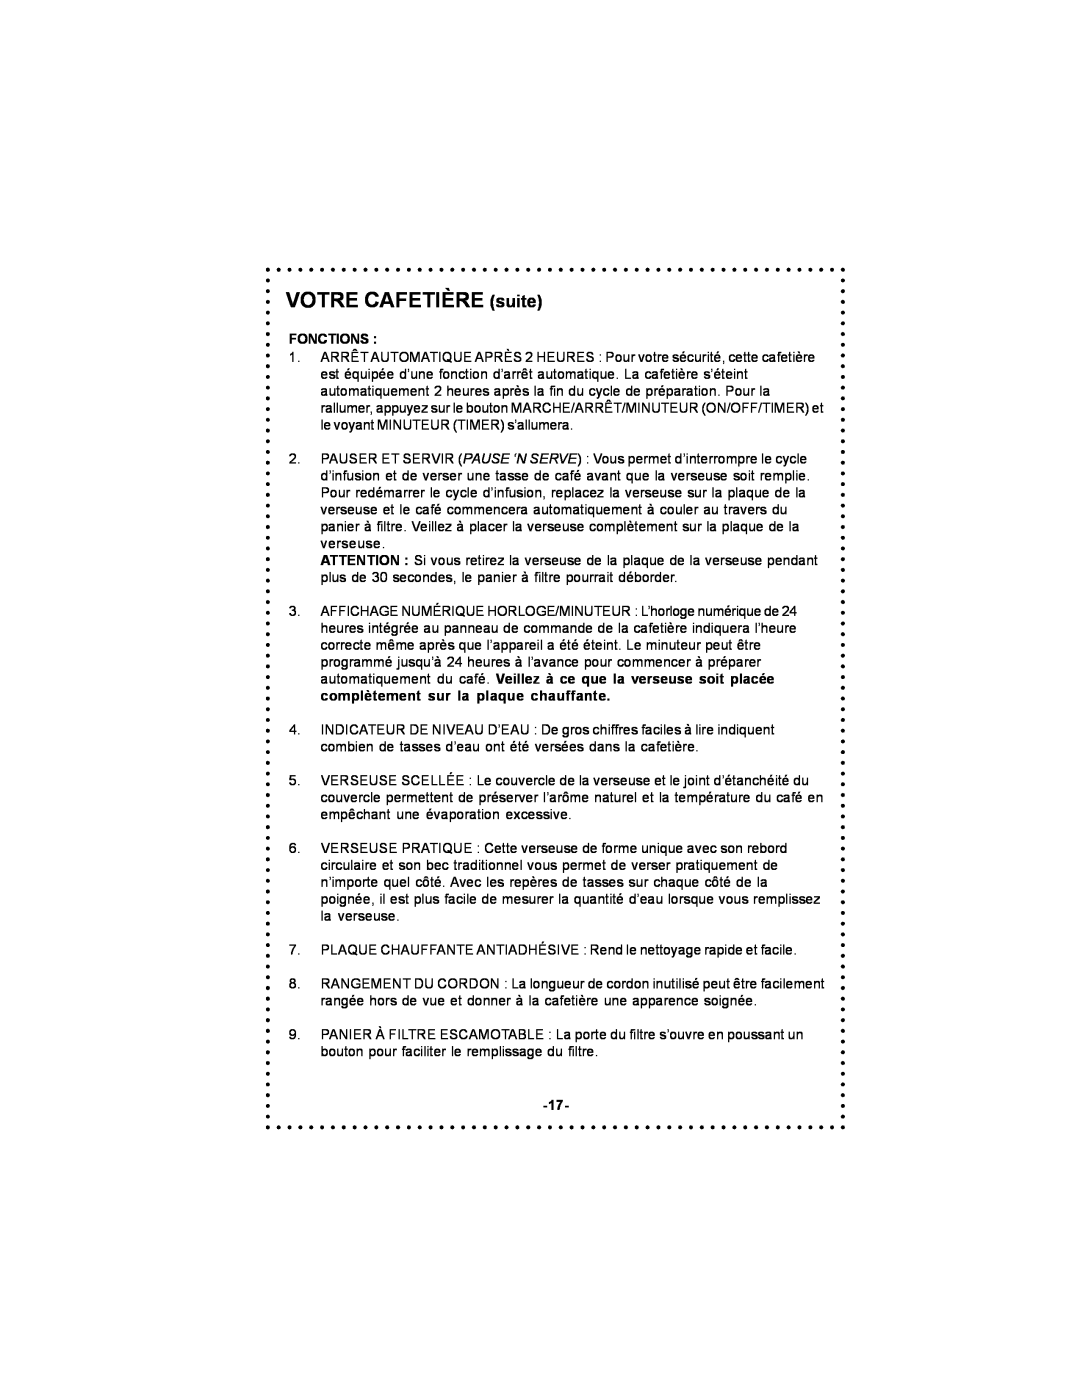 DeLonghi DC56T instruction manual Fonctions, VOTRE CAFETIÈRE suite 